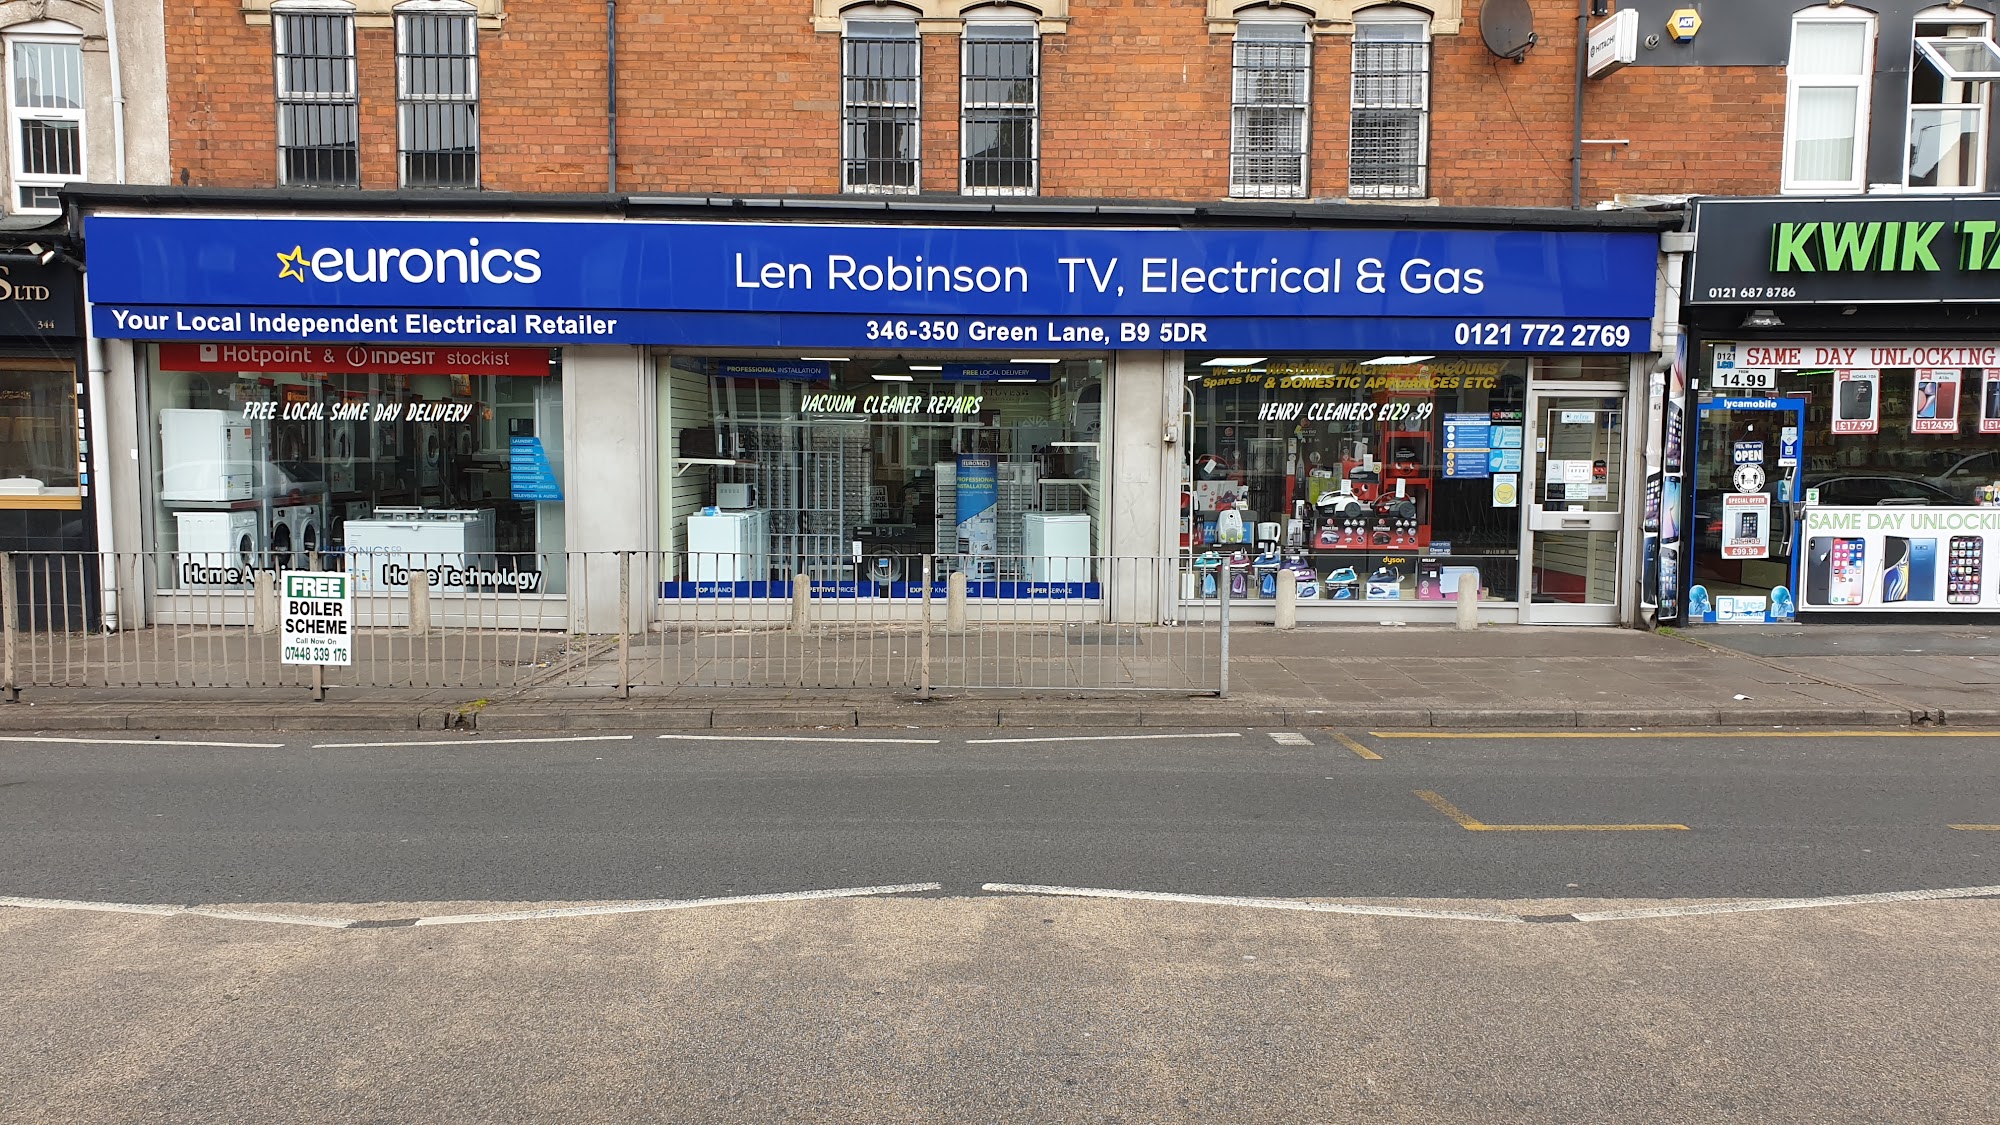 Len Robinson TV Electrical & Gas